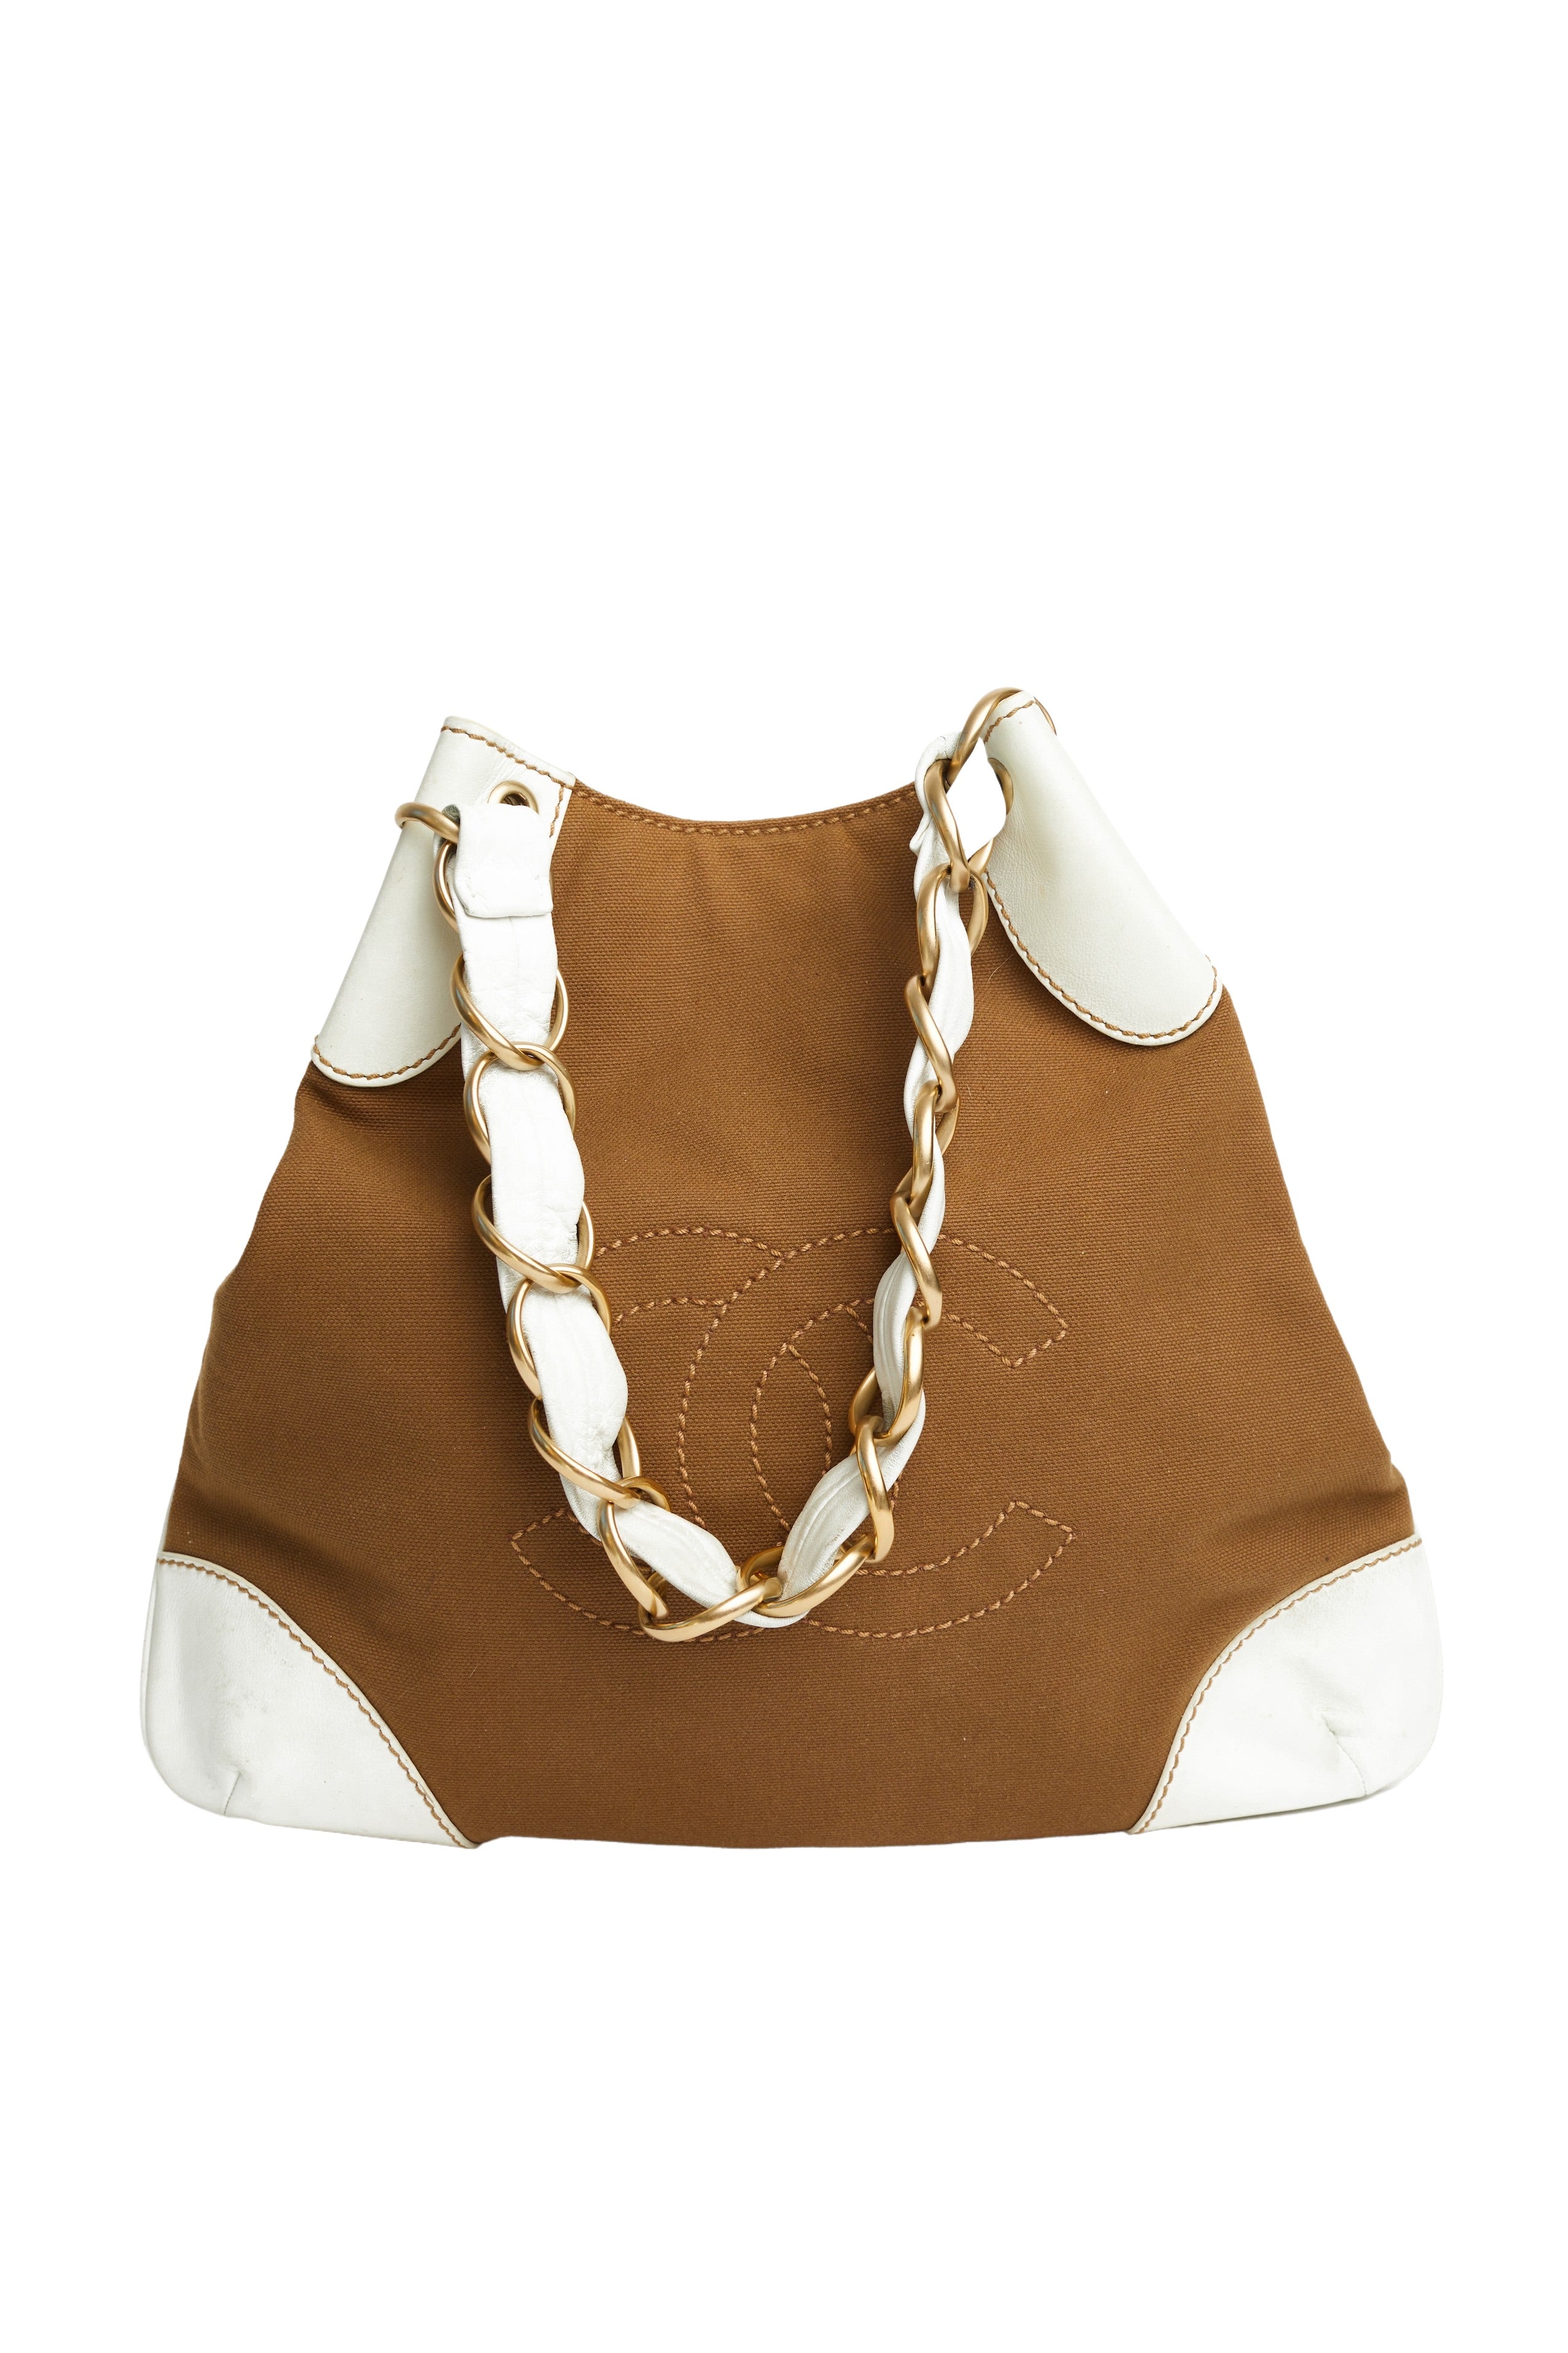 Chanel <br> Canvas Olsen logo shoulder bag with chain straps